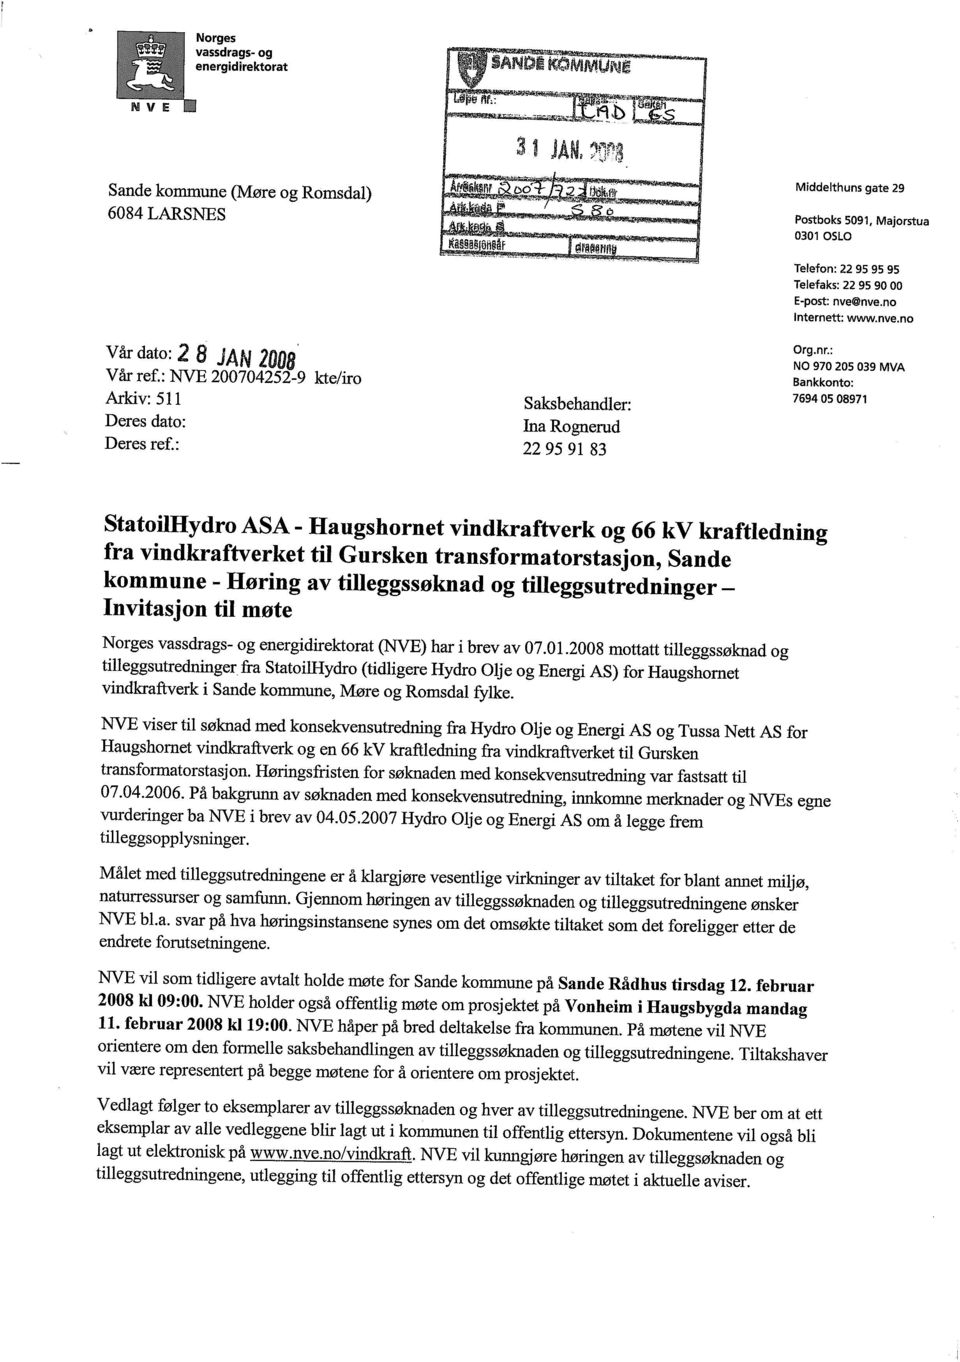 : NO 970 205 039 MVA Bankkonto: 7694 05 08971 StatoilHydro ASA - Haugshornet vindkraftverk og 66 kv kraftledning fra vindkraftverket til Gursken transformatorstasjon, Sande kommune - Høring av